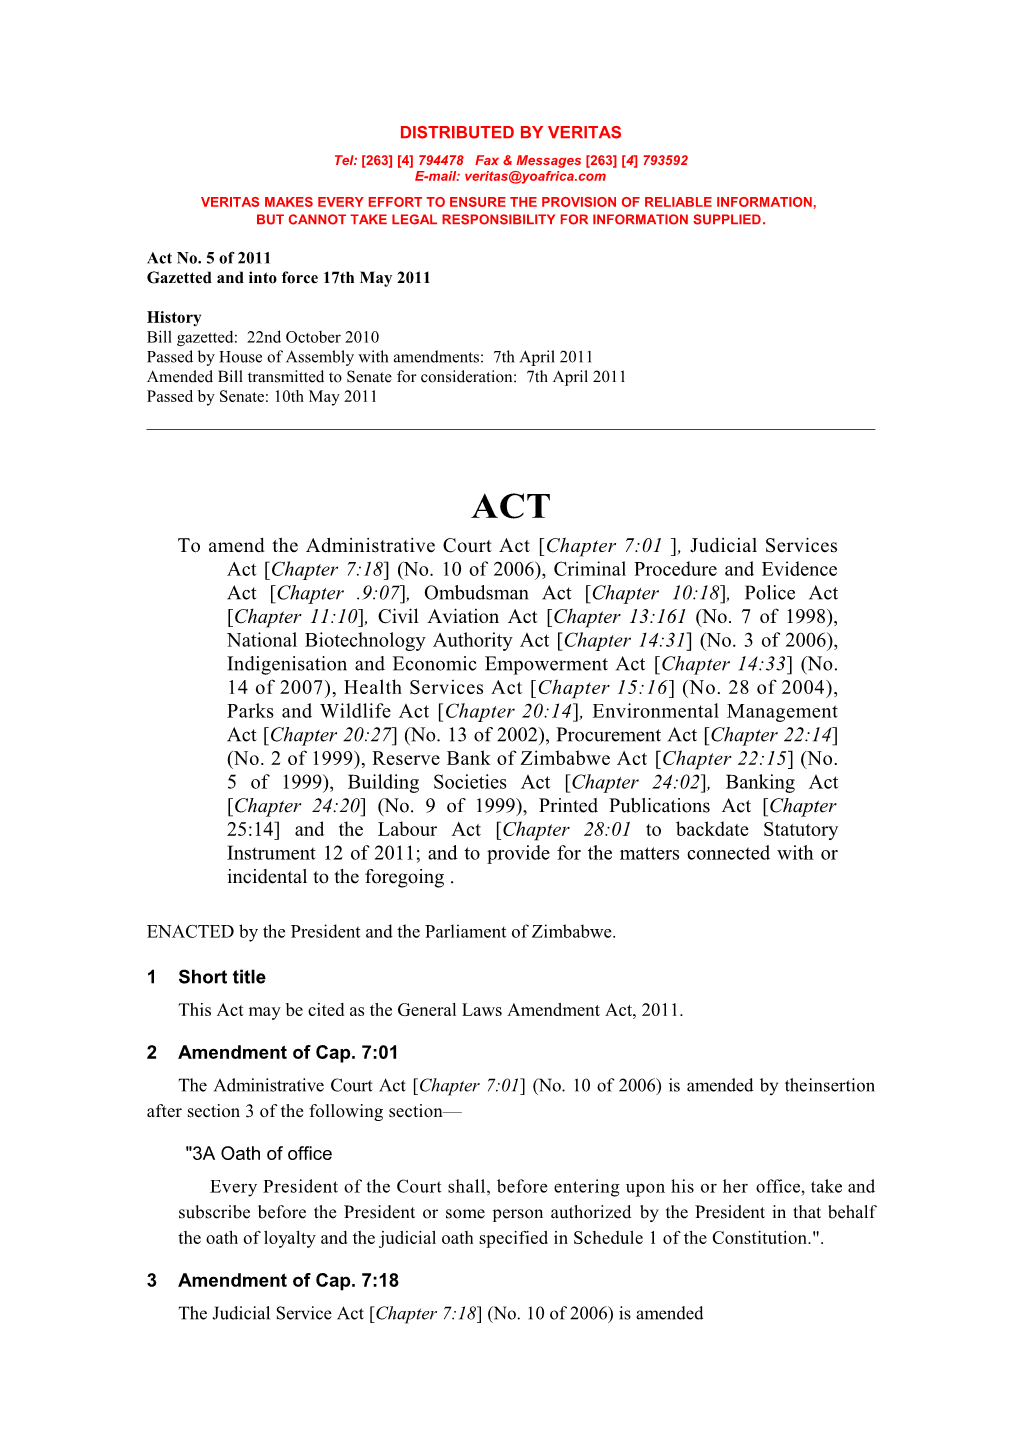 General Laws Amendment Act - No. 5 of 2011